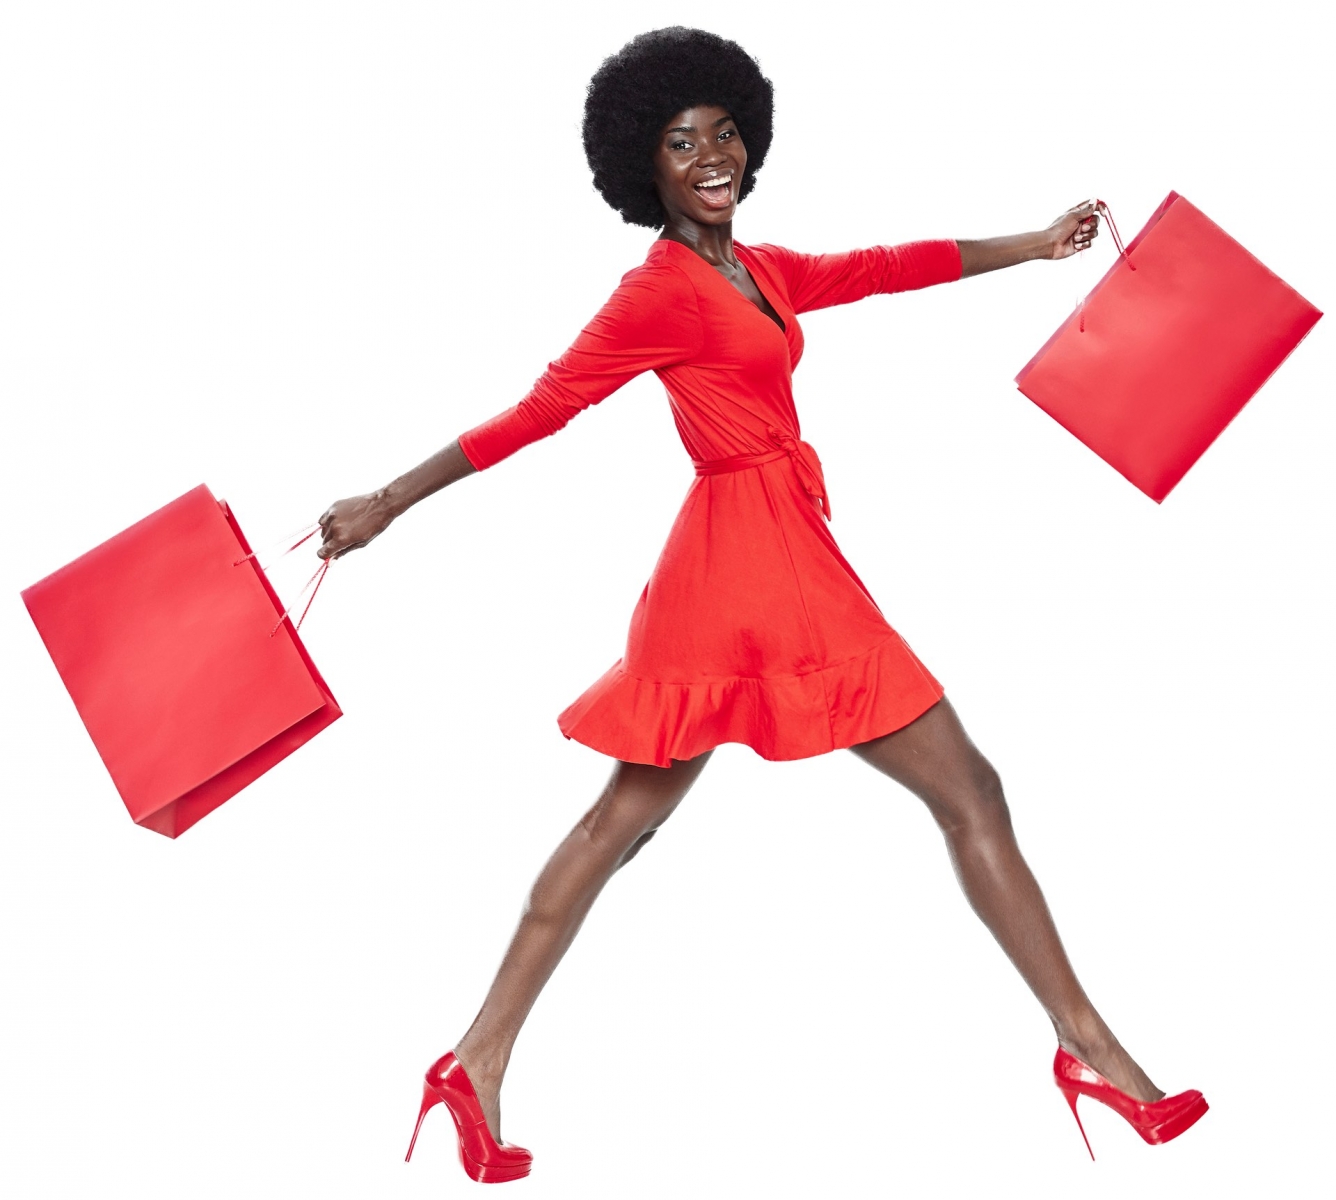 Volle Länge der schönen jungen Afrikanerin im roten Kleid, die rote Einkaufstüten trägt